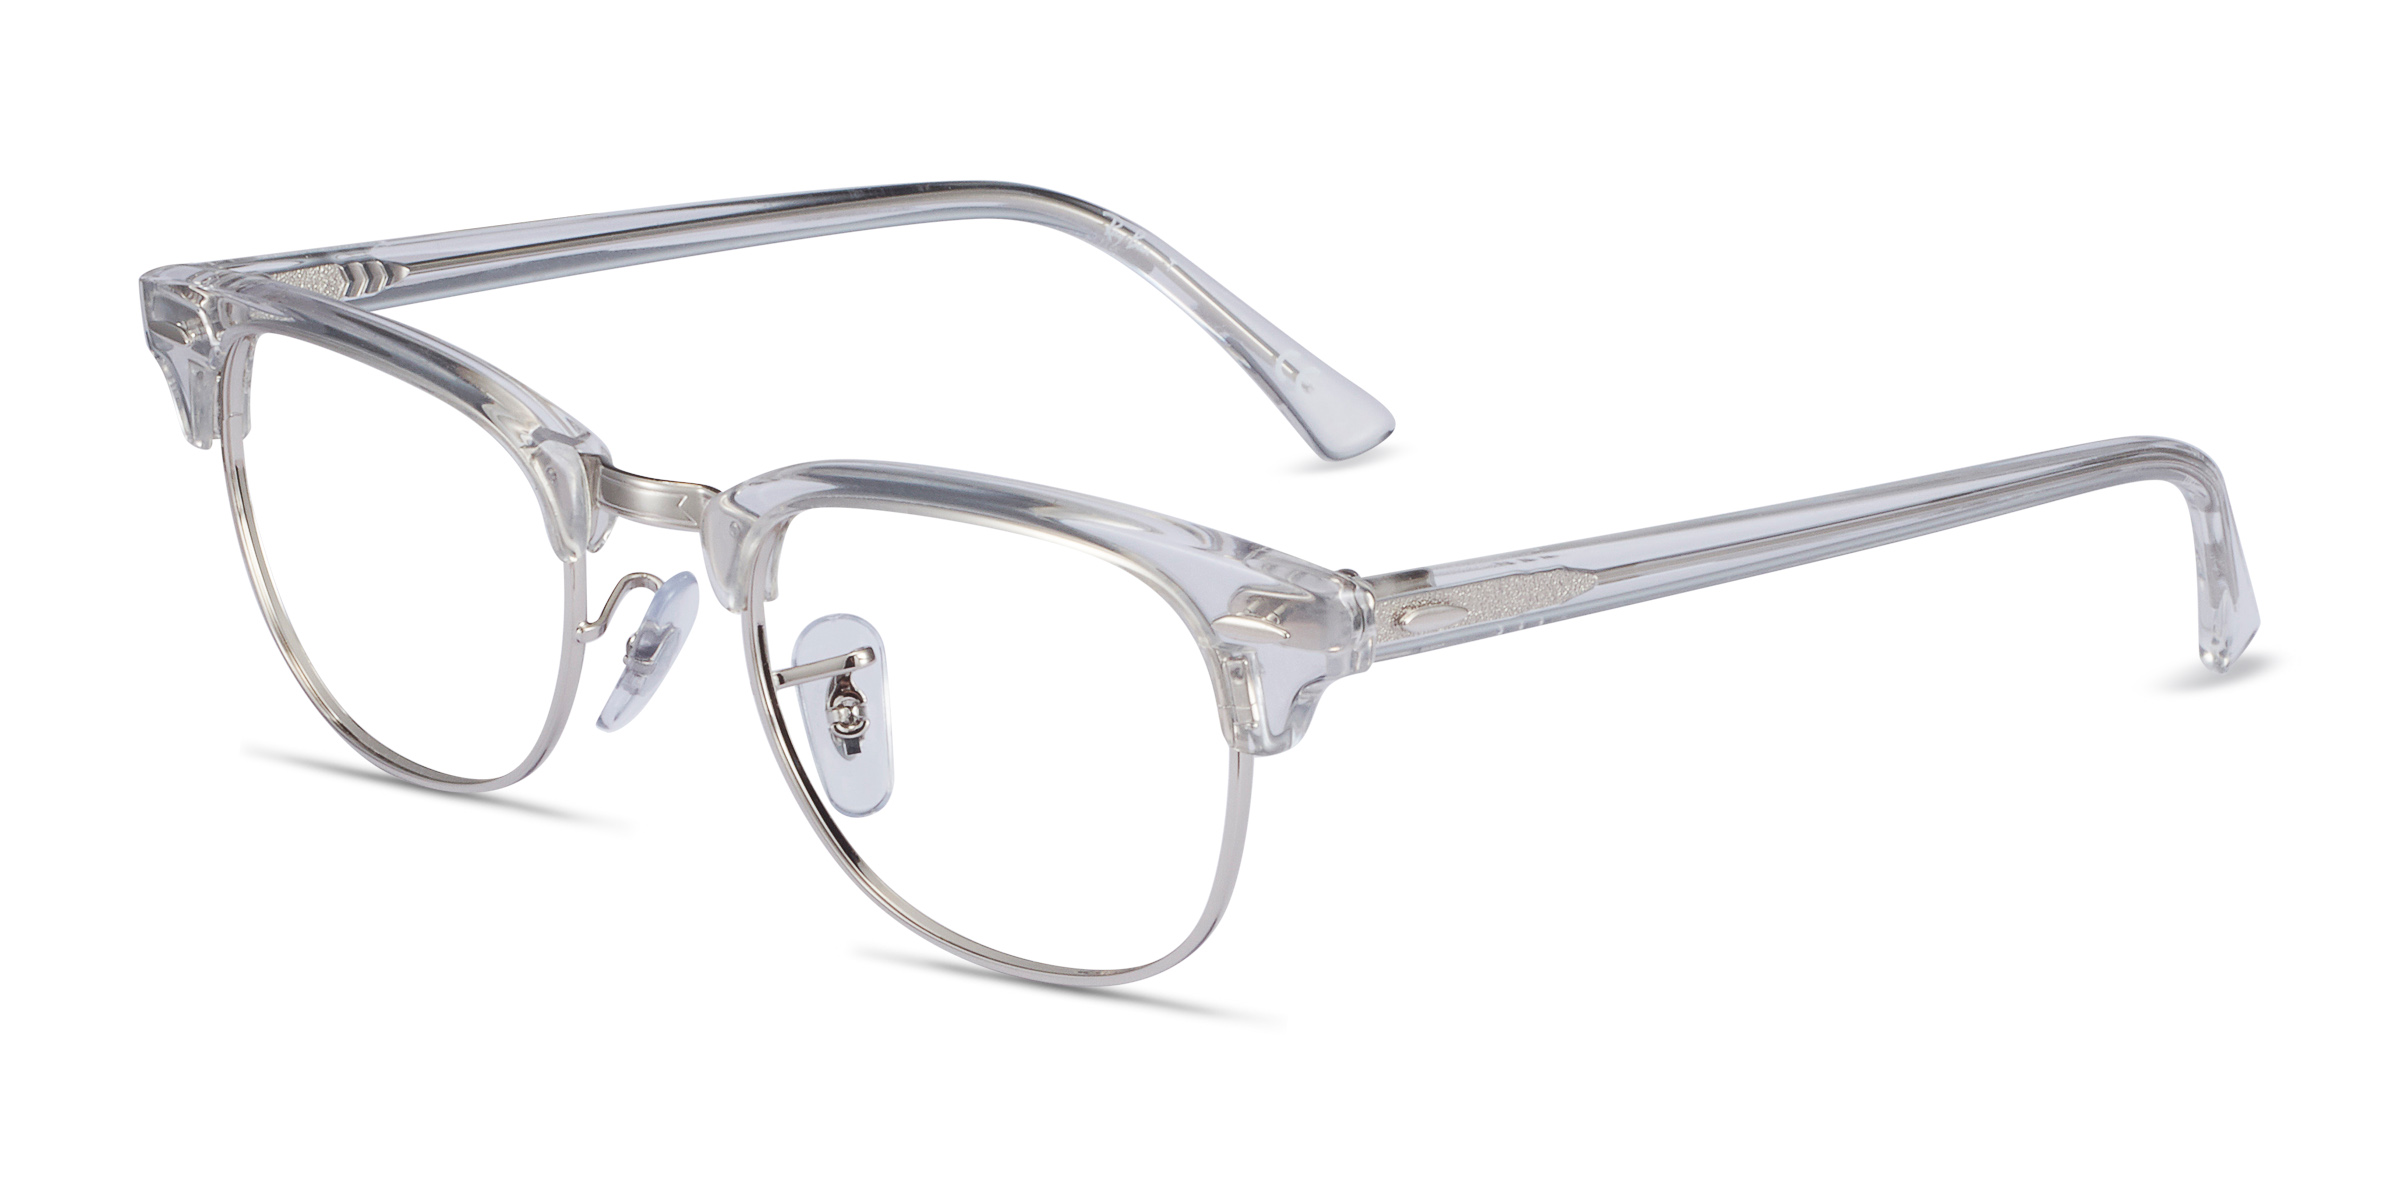 Ray Ban Rb5154 Clubmaster Browline Clear Frame Eyeglasses Eyebuydirect Canada